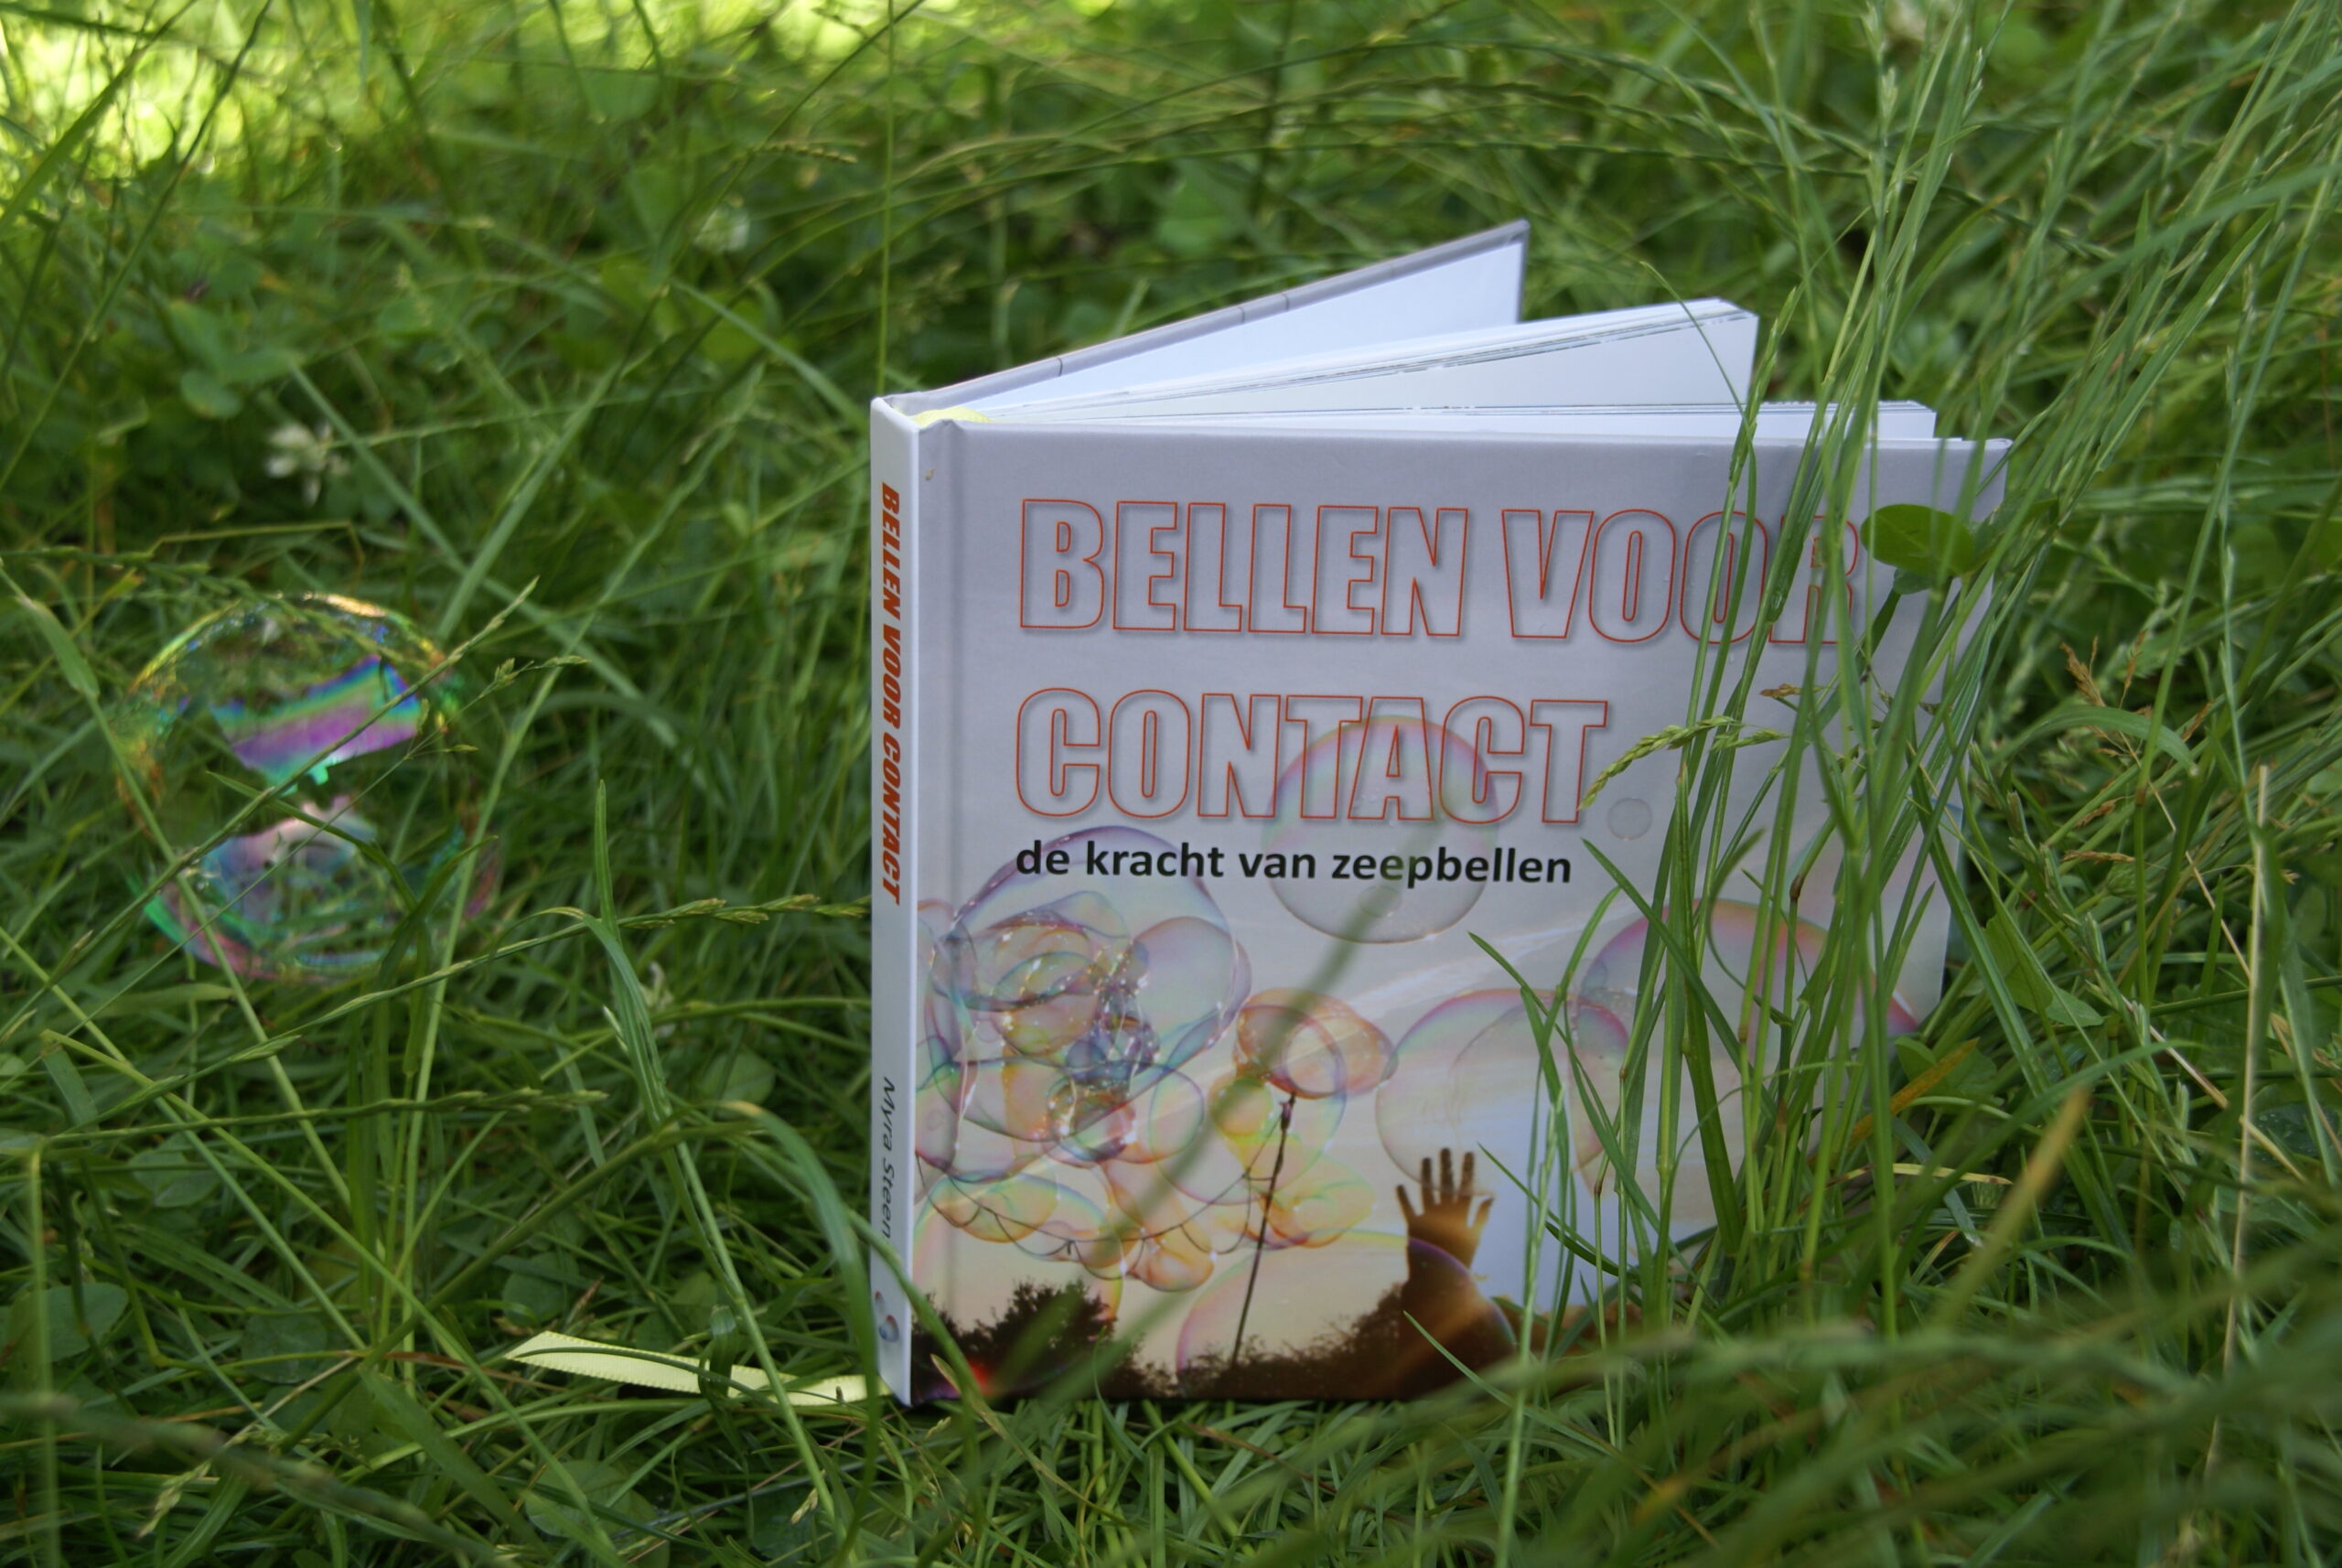 Boek Bellen voor Contact in het gras met zeepbel